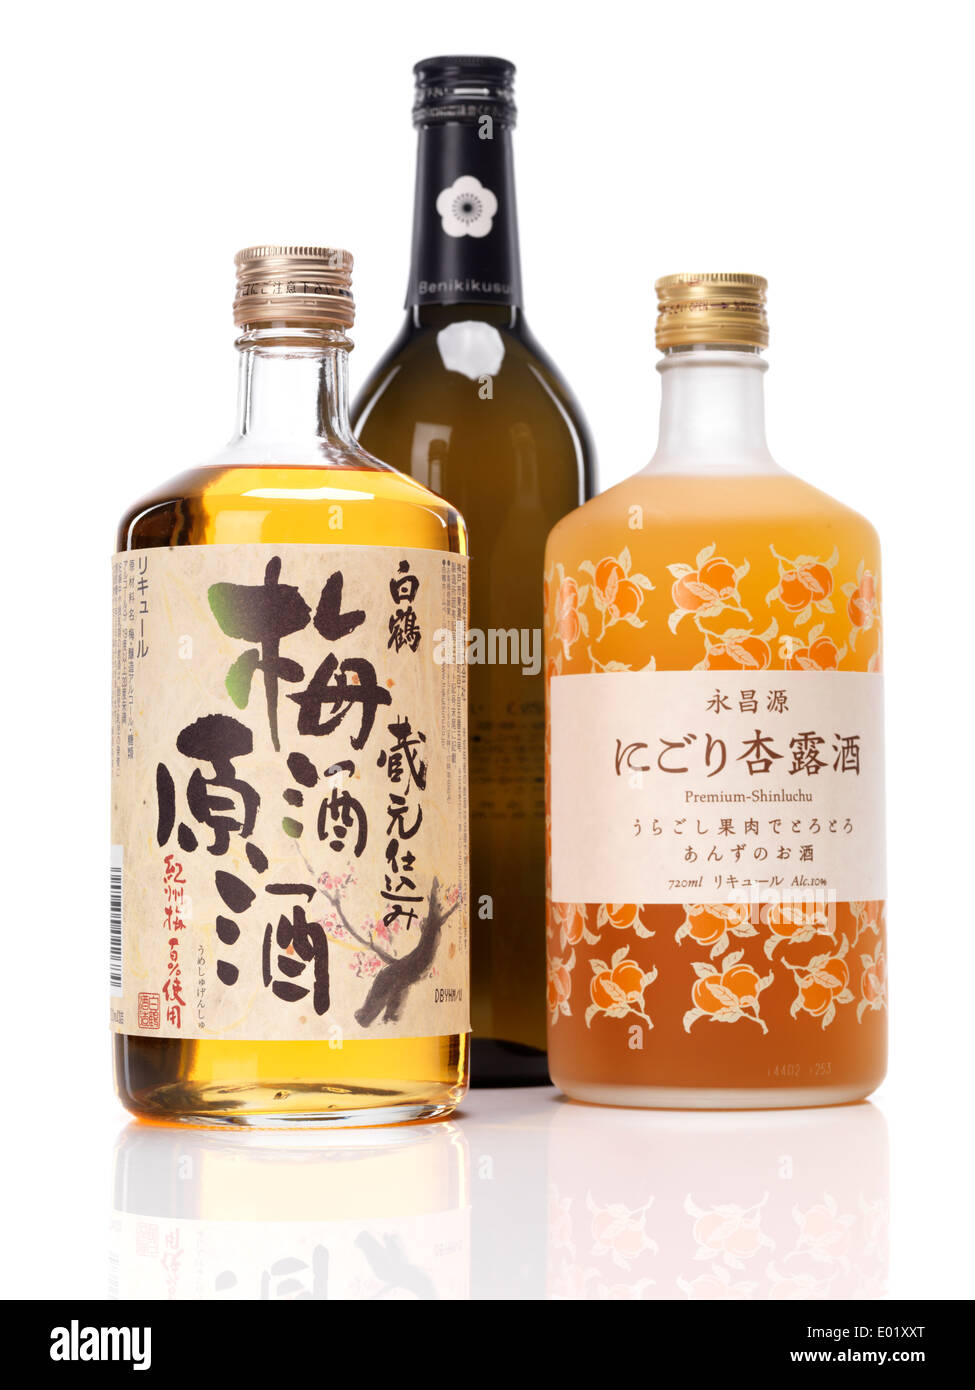 Japanischer süßer Sake Flaschen, weiße Kranich Pflaume Wein ume, Benikikusui Premium-Pflaume Sake und Premium-Shinluchu Aprikosen Schnaps Stockfoto